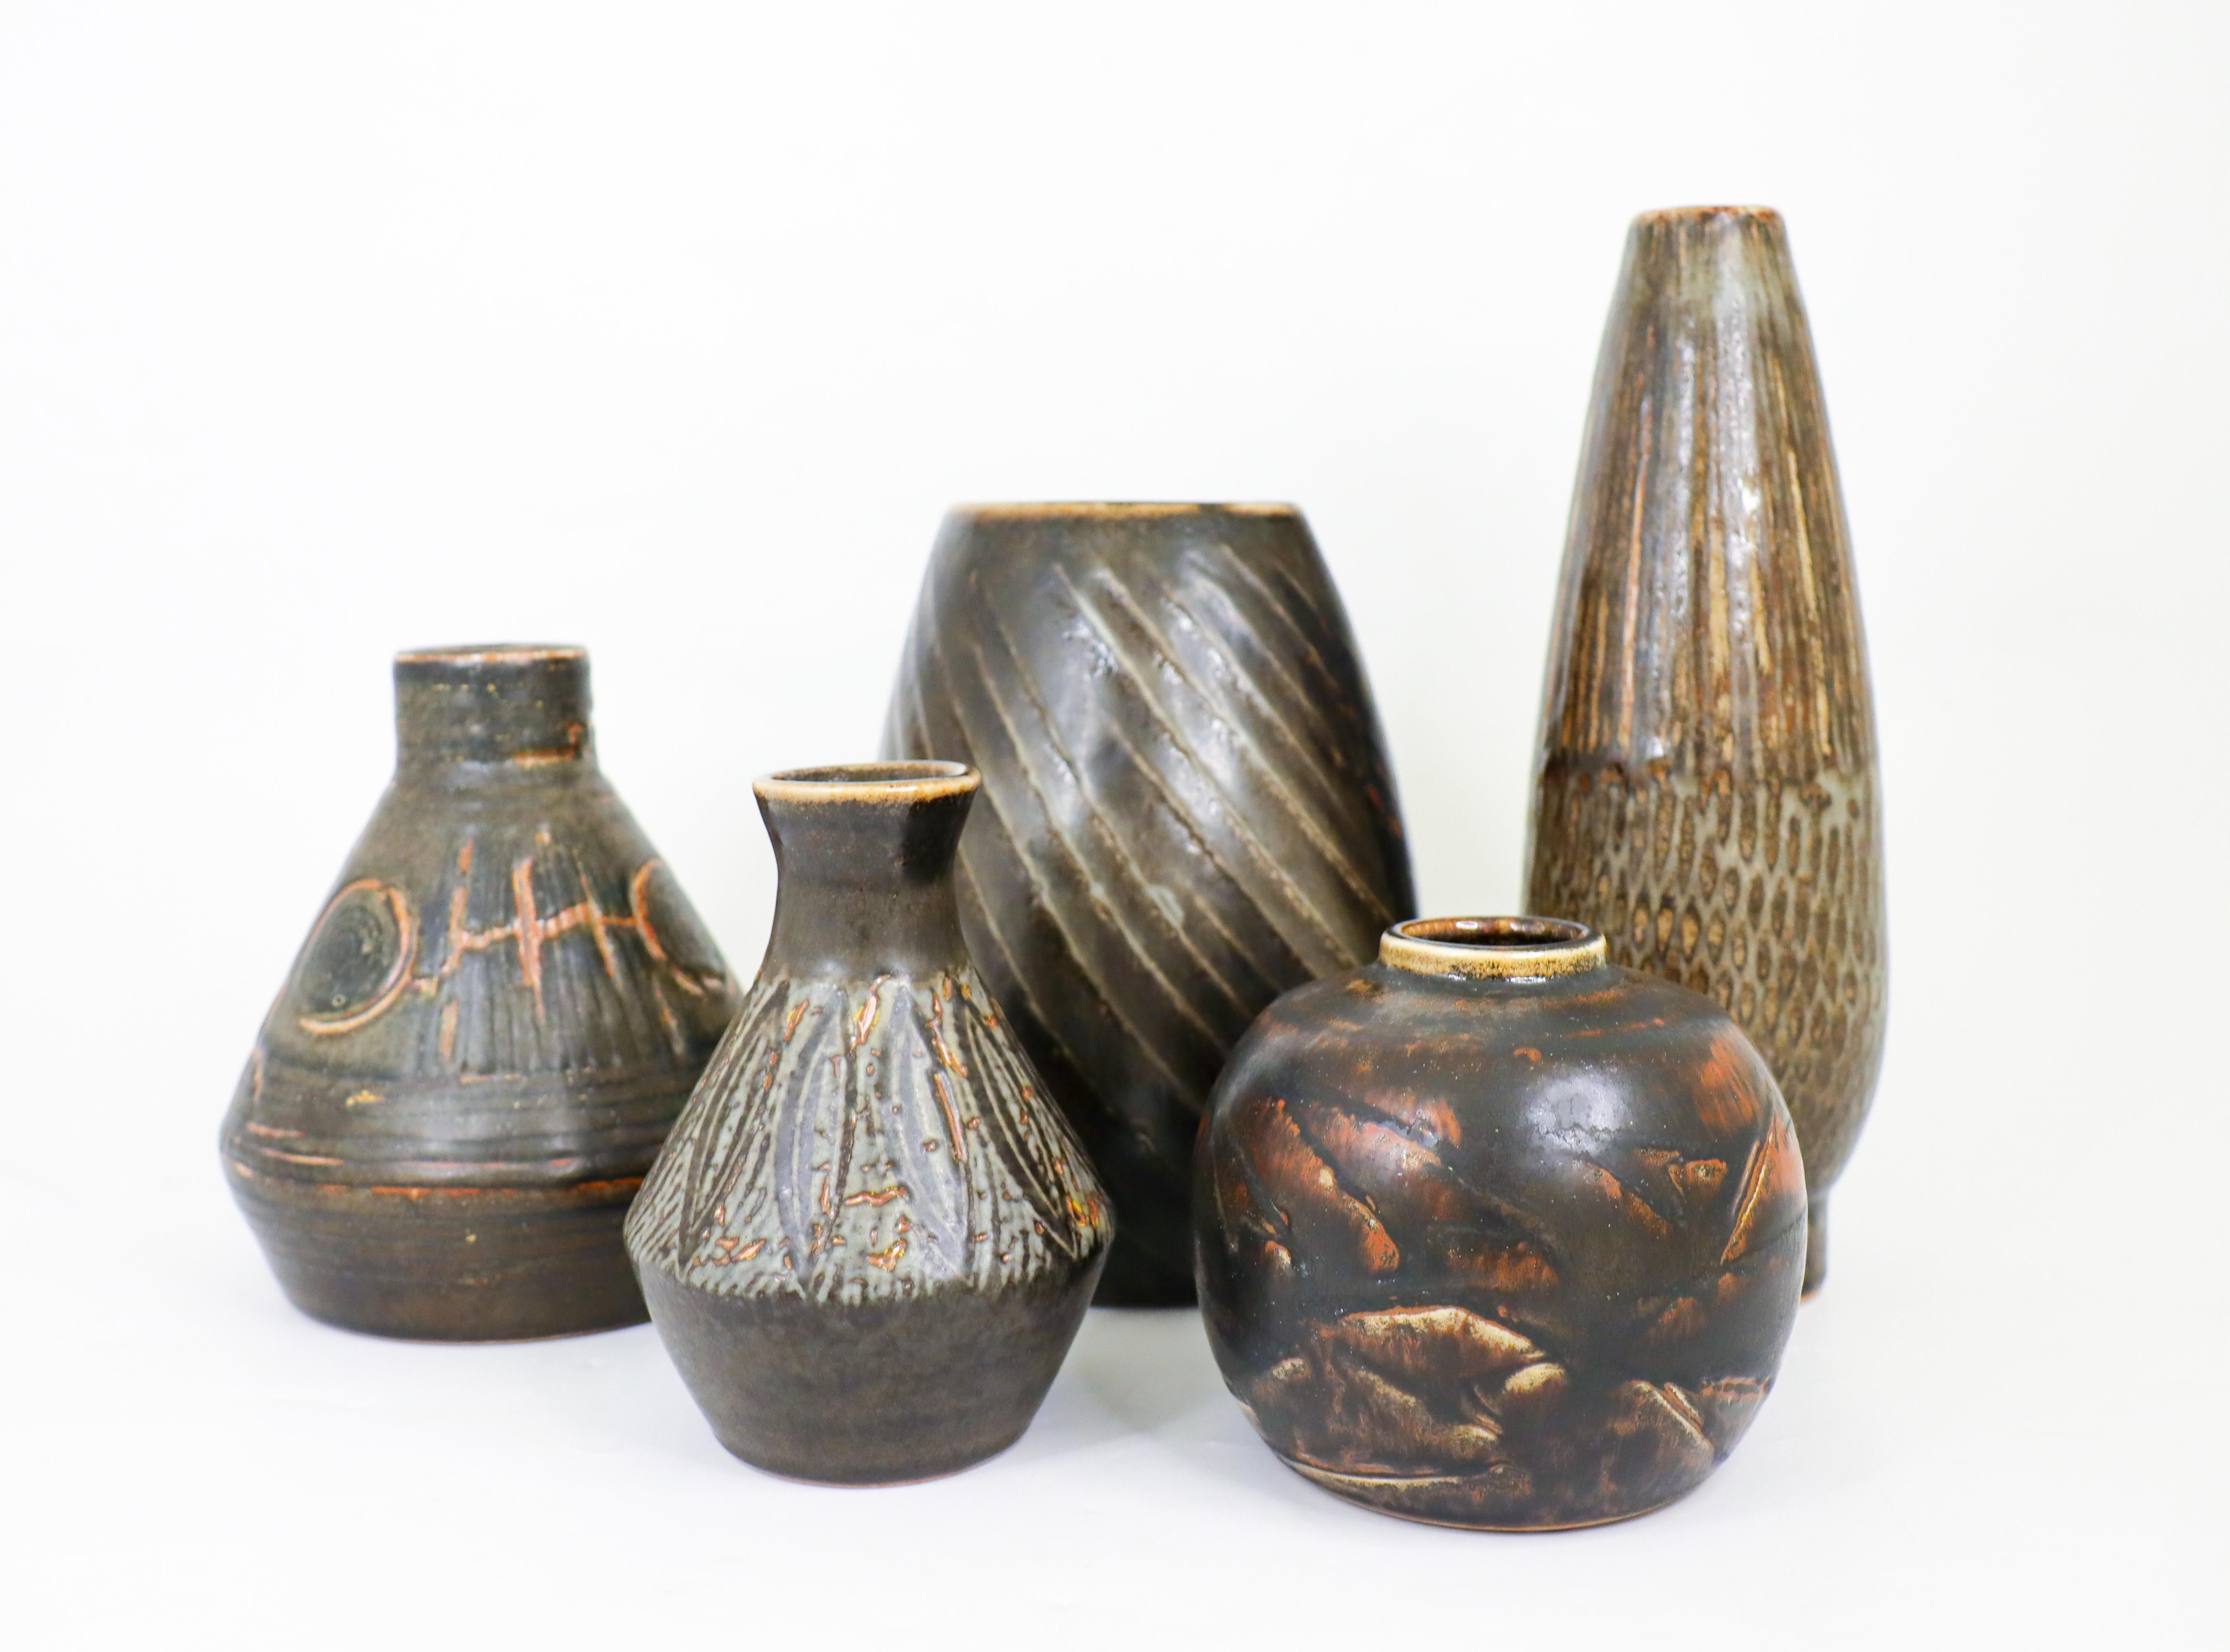 Un groupe de cinq vases brun foncé/noir avec une glaçure étonnante, conçus par Carl-Harry Stålhane à Rörstrand dans les années 1950 et 1960. Les vases se situent entre  11,5 - 2475 cm de haut et en excellent état. Trois des vases sont de deuxième